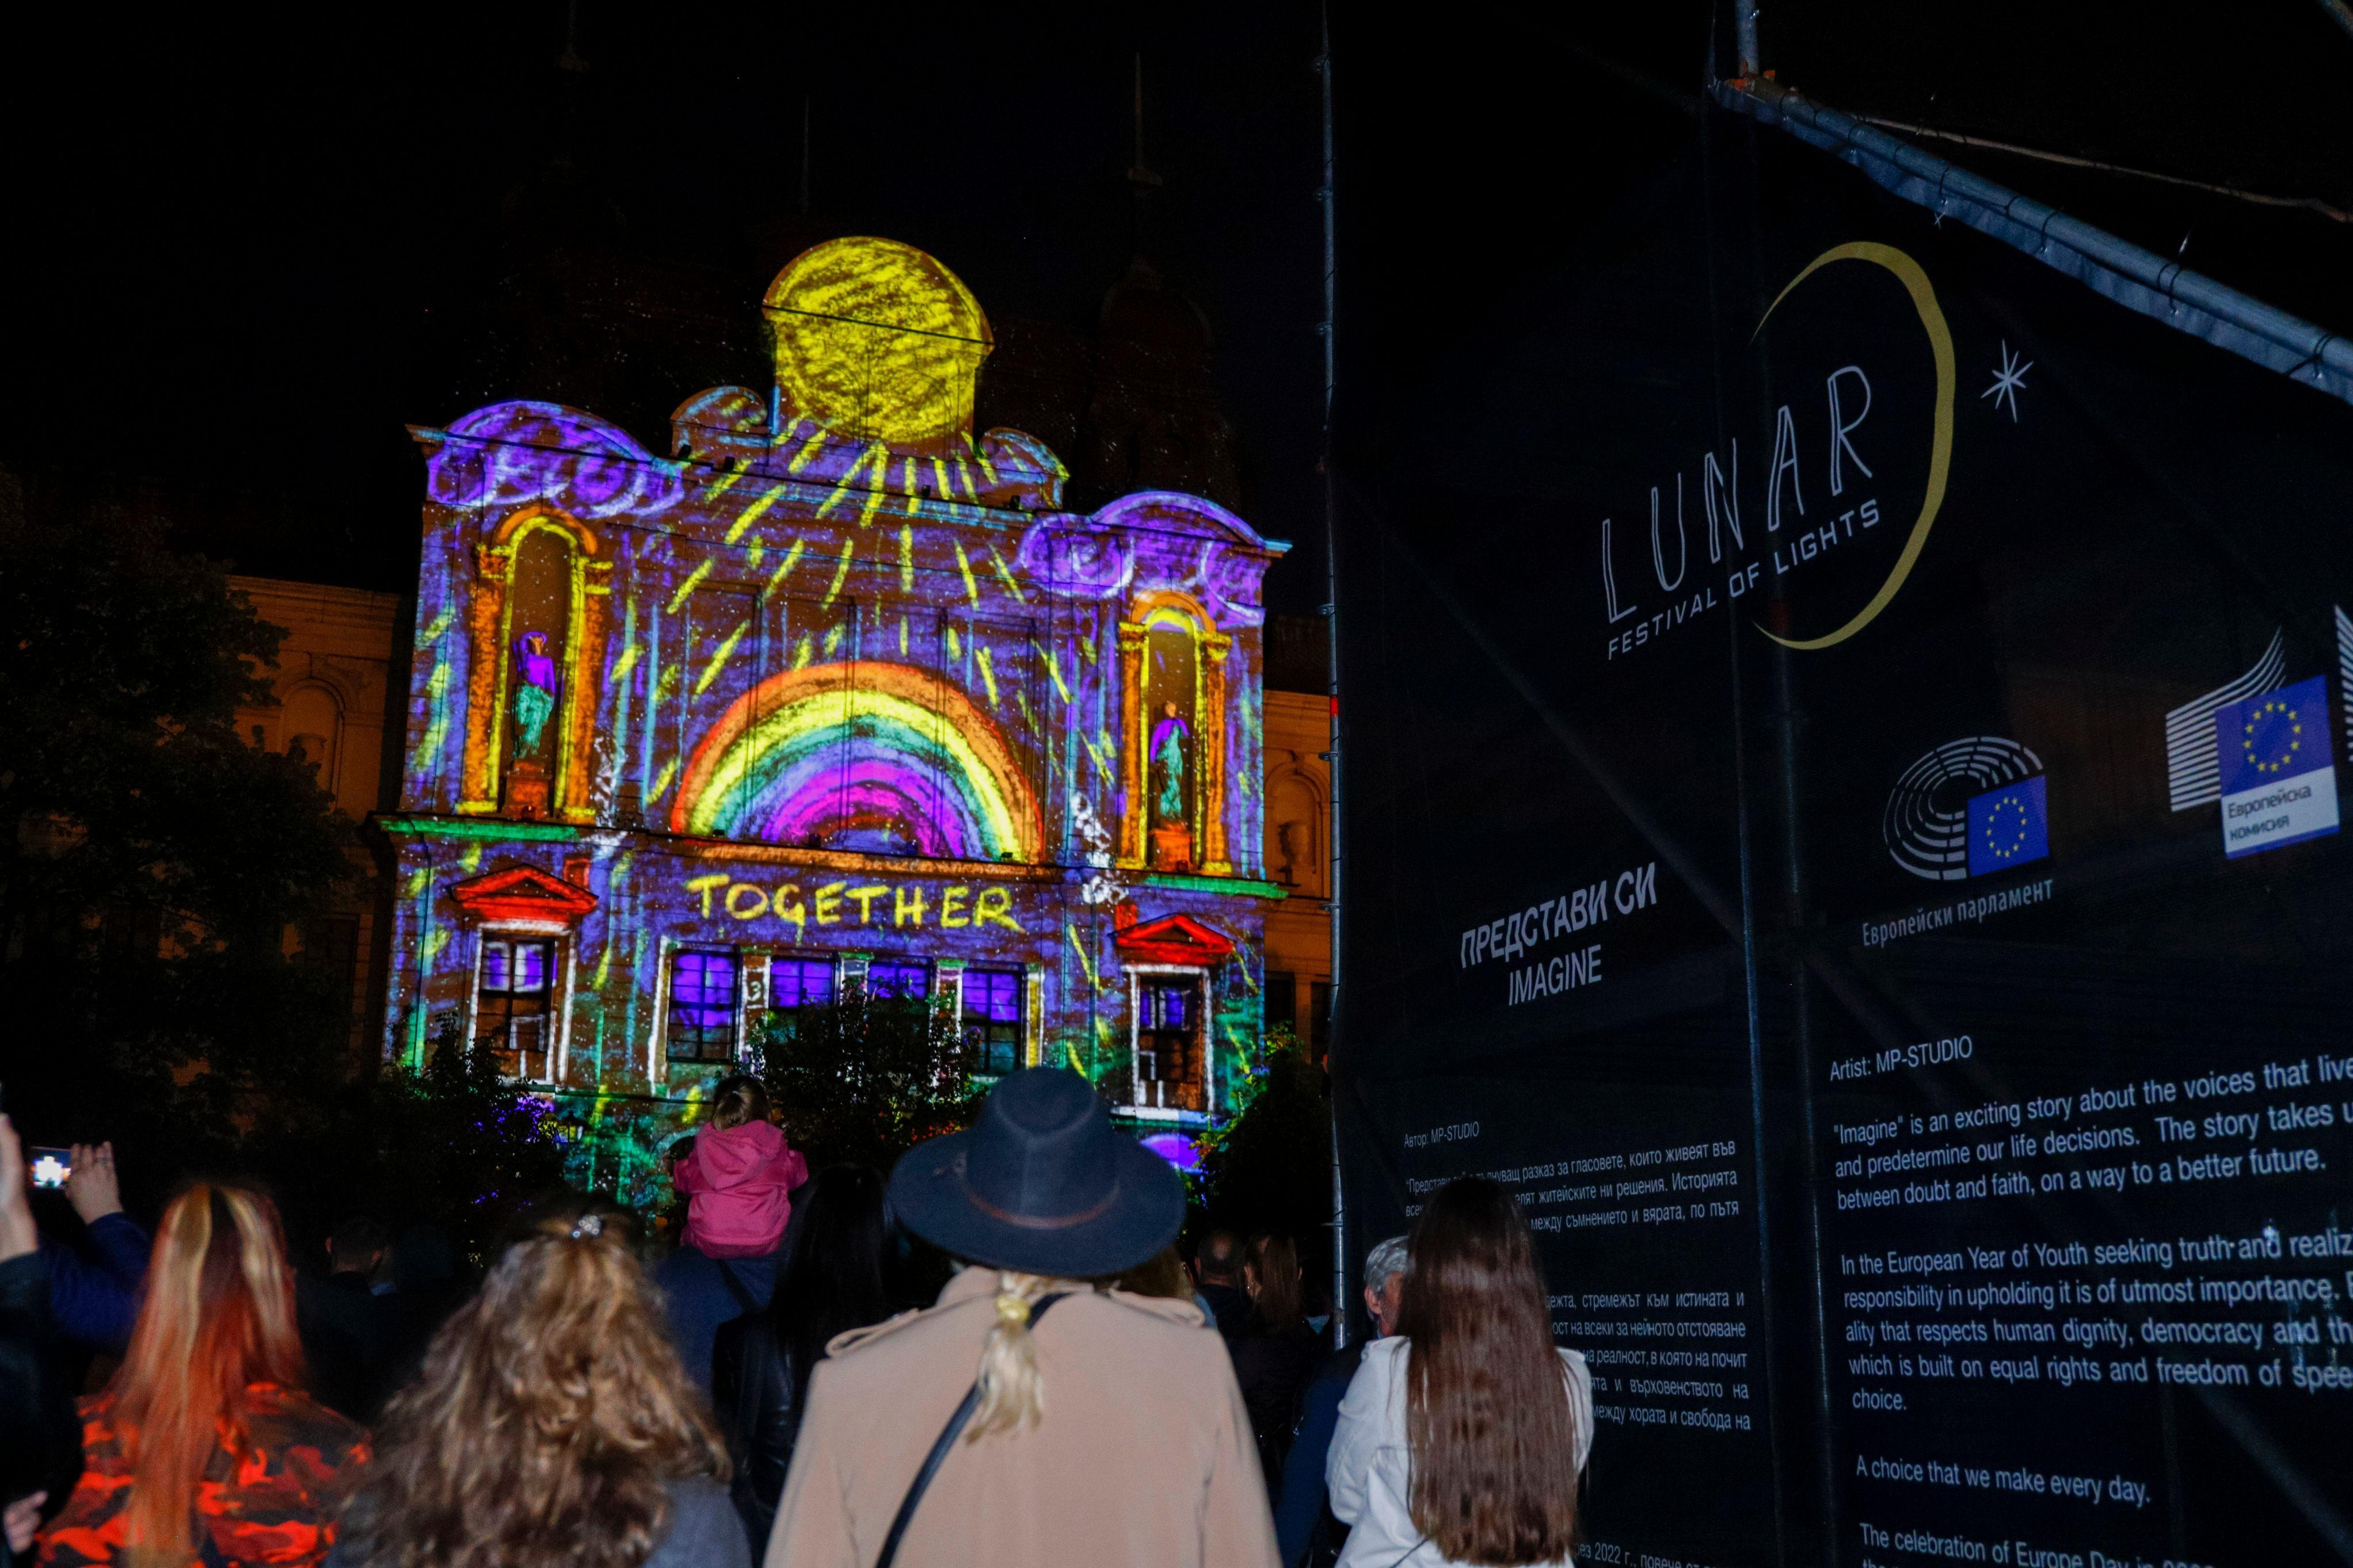 Над половин милион души посетиха първия Фестивал на светлините LUNAR в Софи